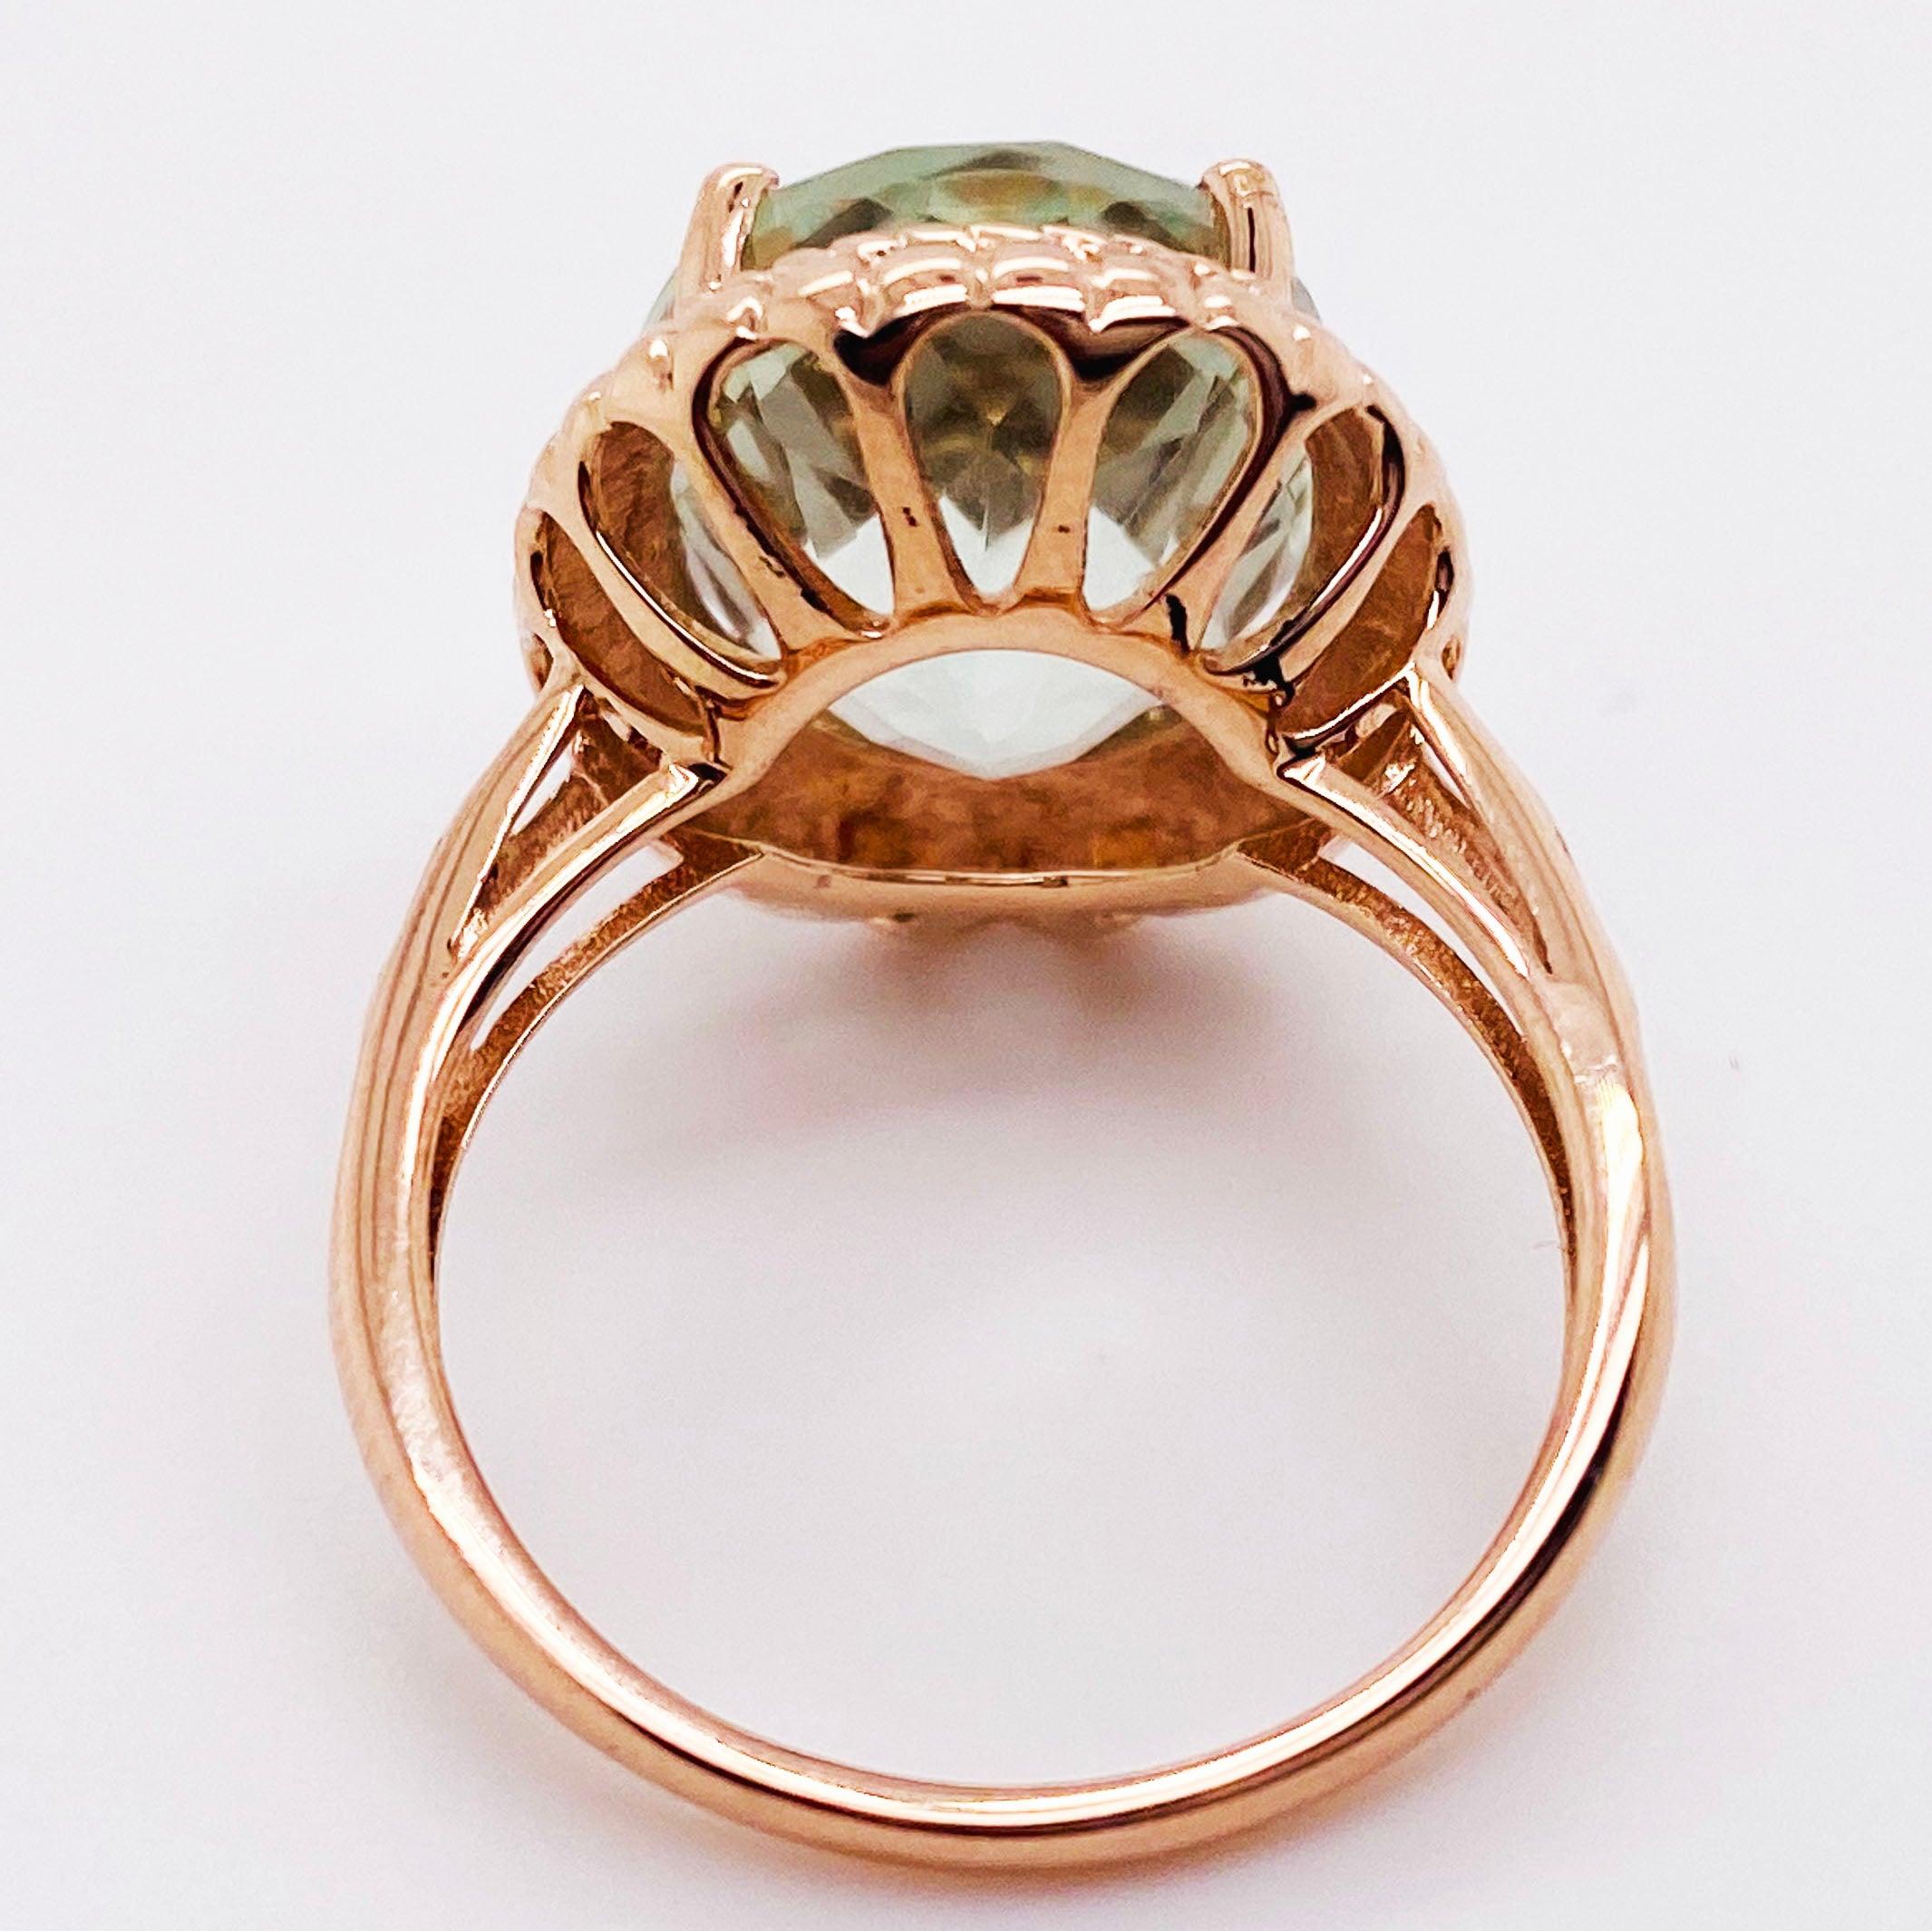 Oval Green Amethyst Rose Gold Ring, 14 Karat Gold 8.50 Carat Amethyst Gemstone 4